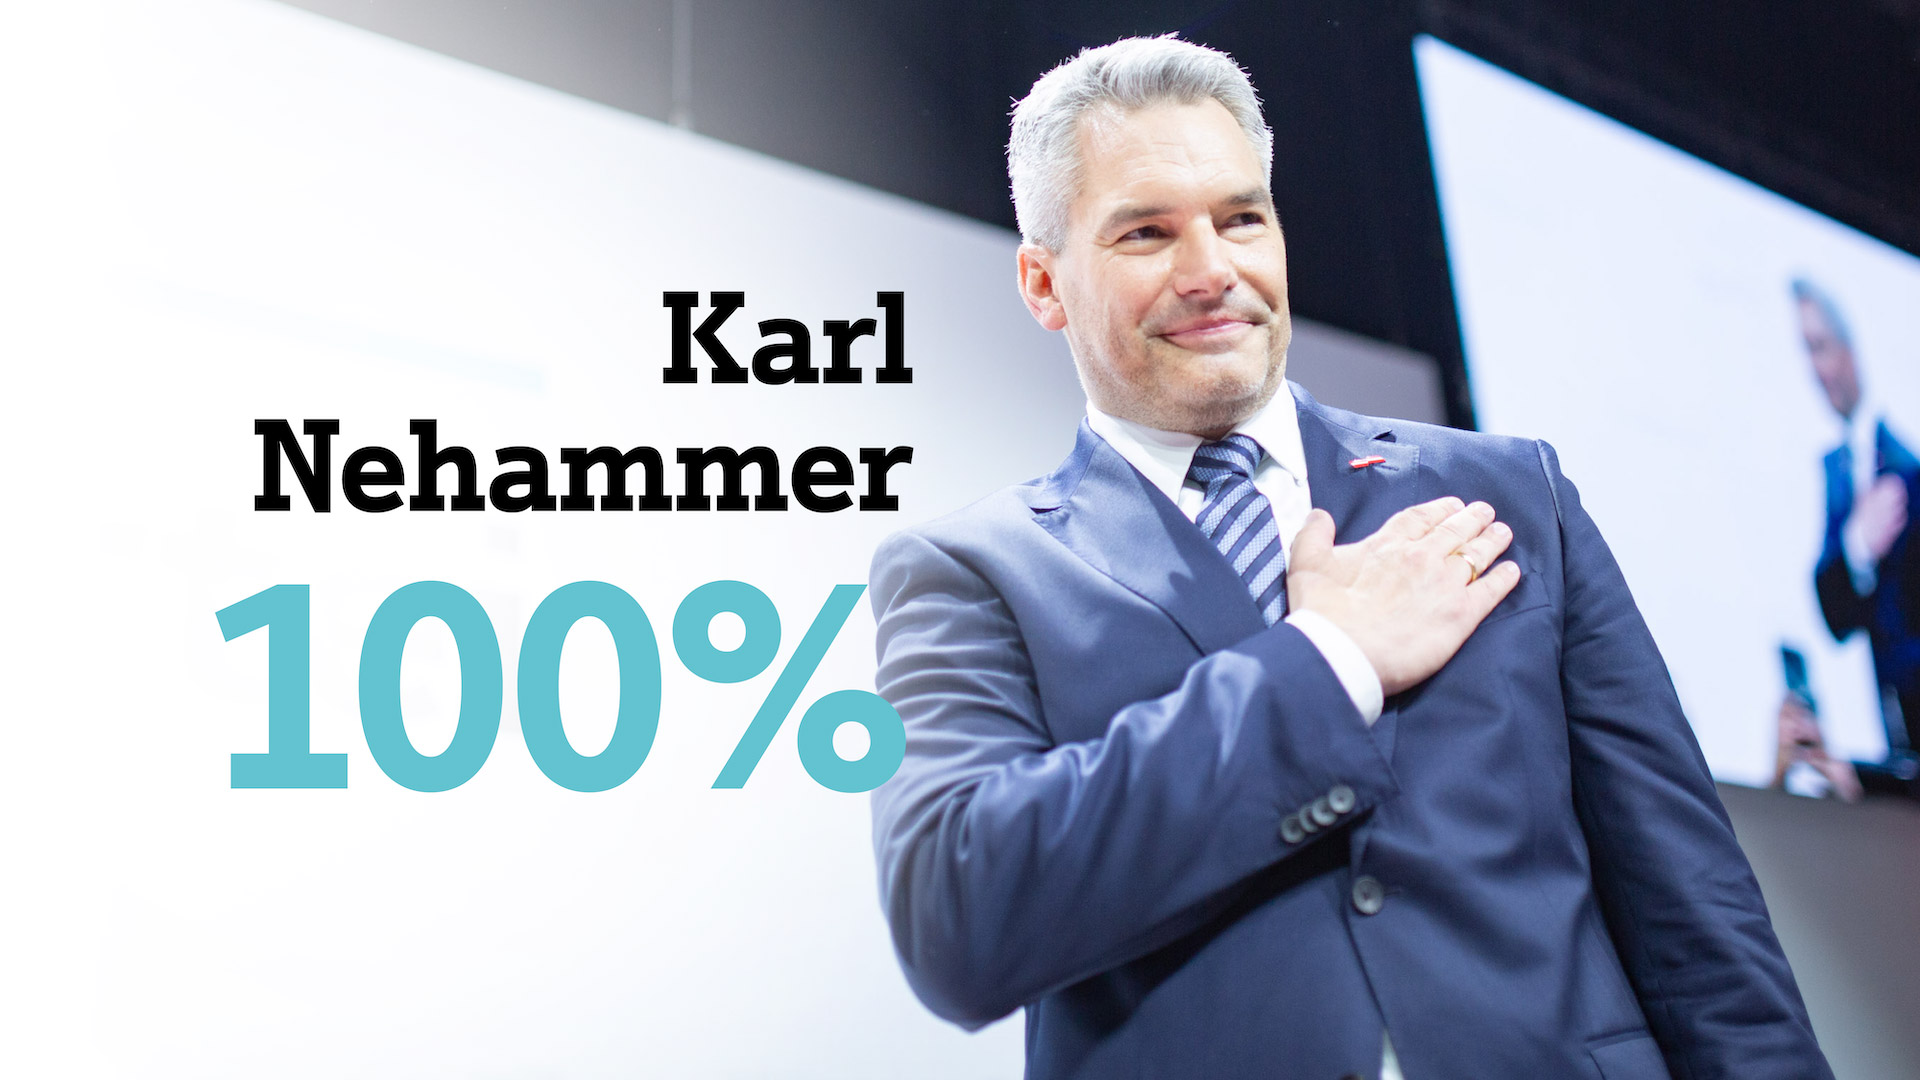 ÖVP-Bundesparteitag zeigt volles Vertrauen für Karl Nehammer: 100% Zustimmung